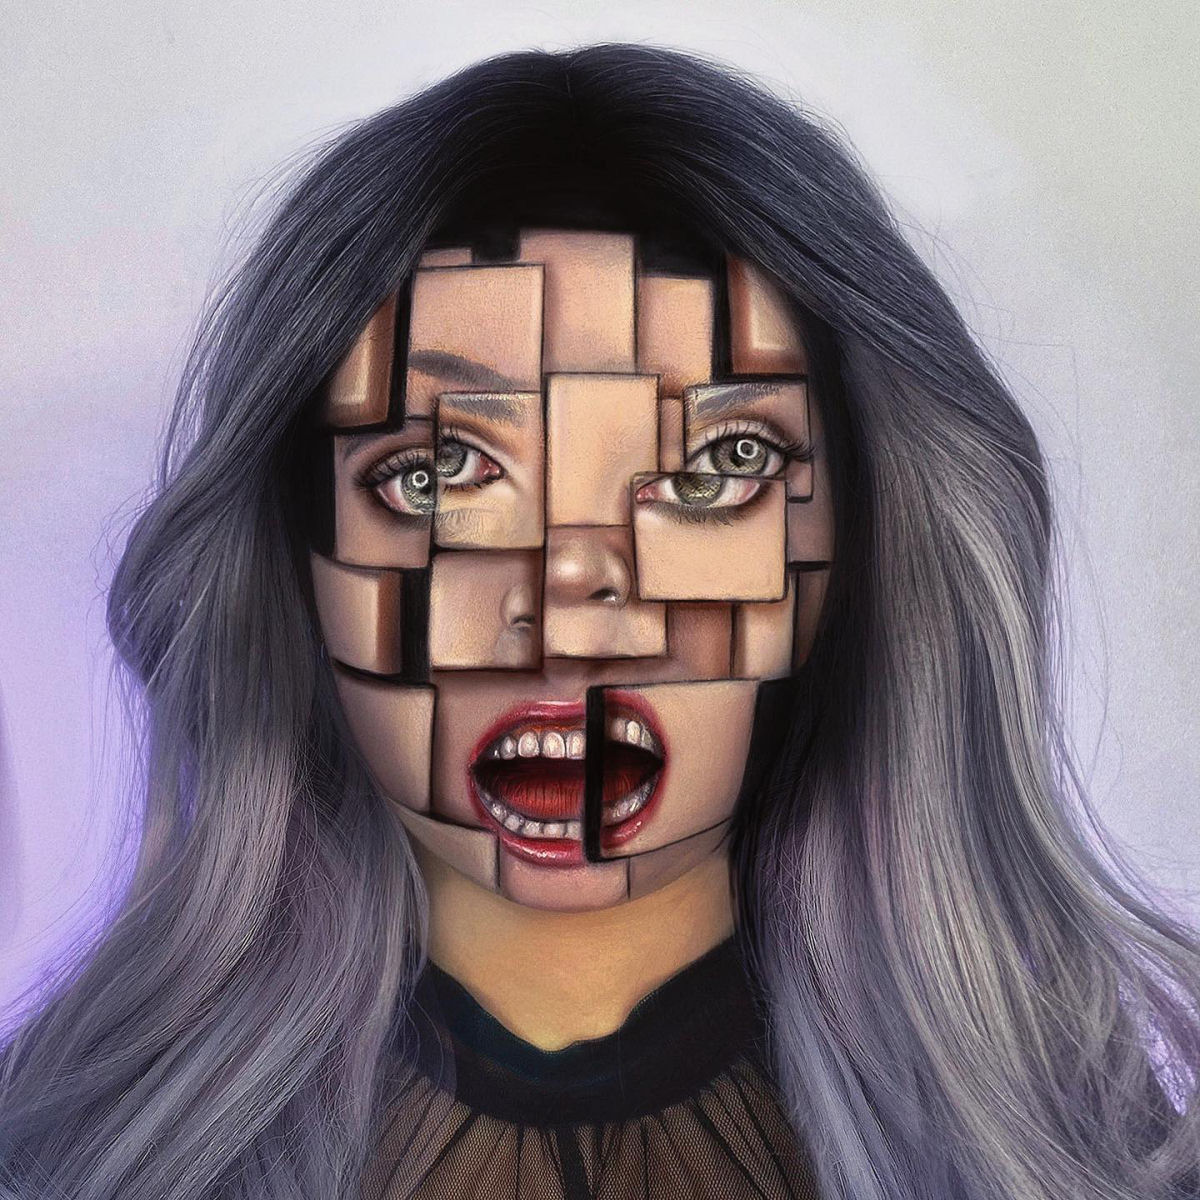 Artista usa seu próprio rosto como tela para ilusões surrealistas 07